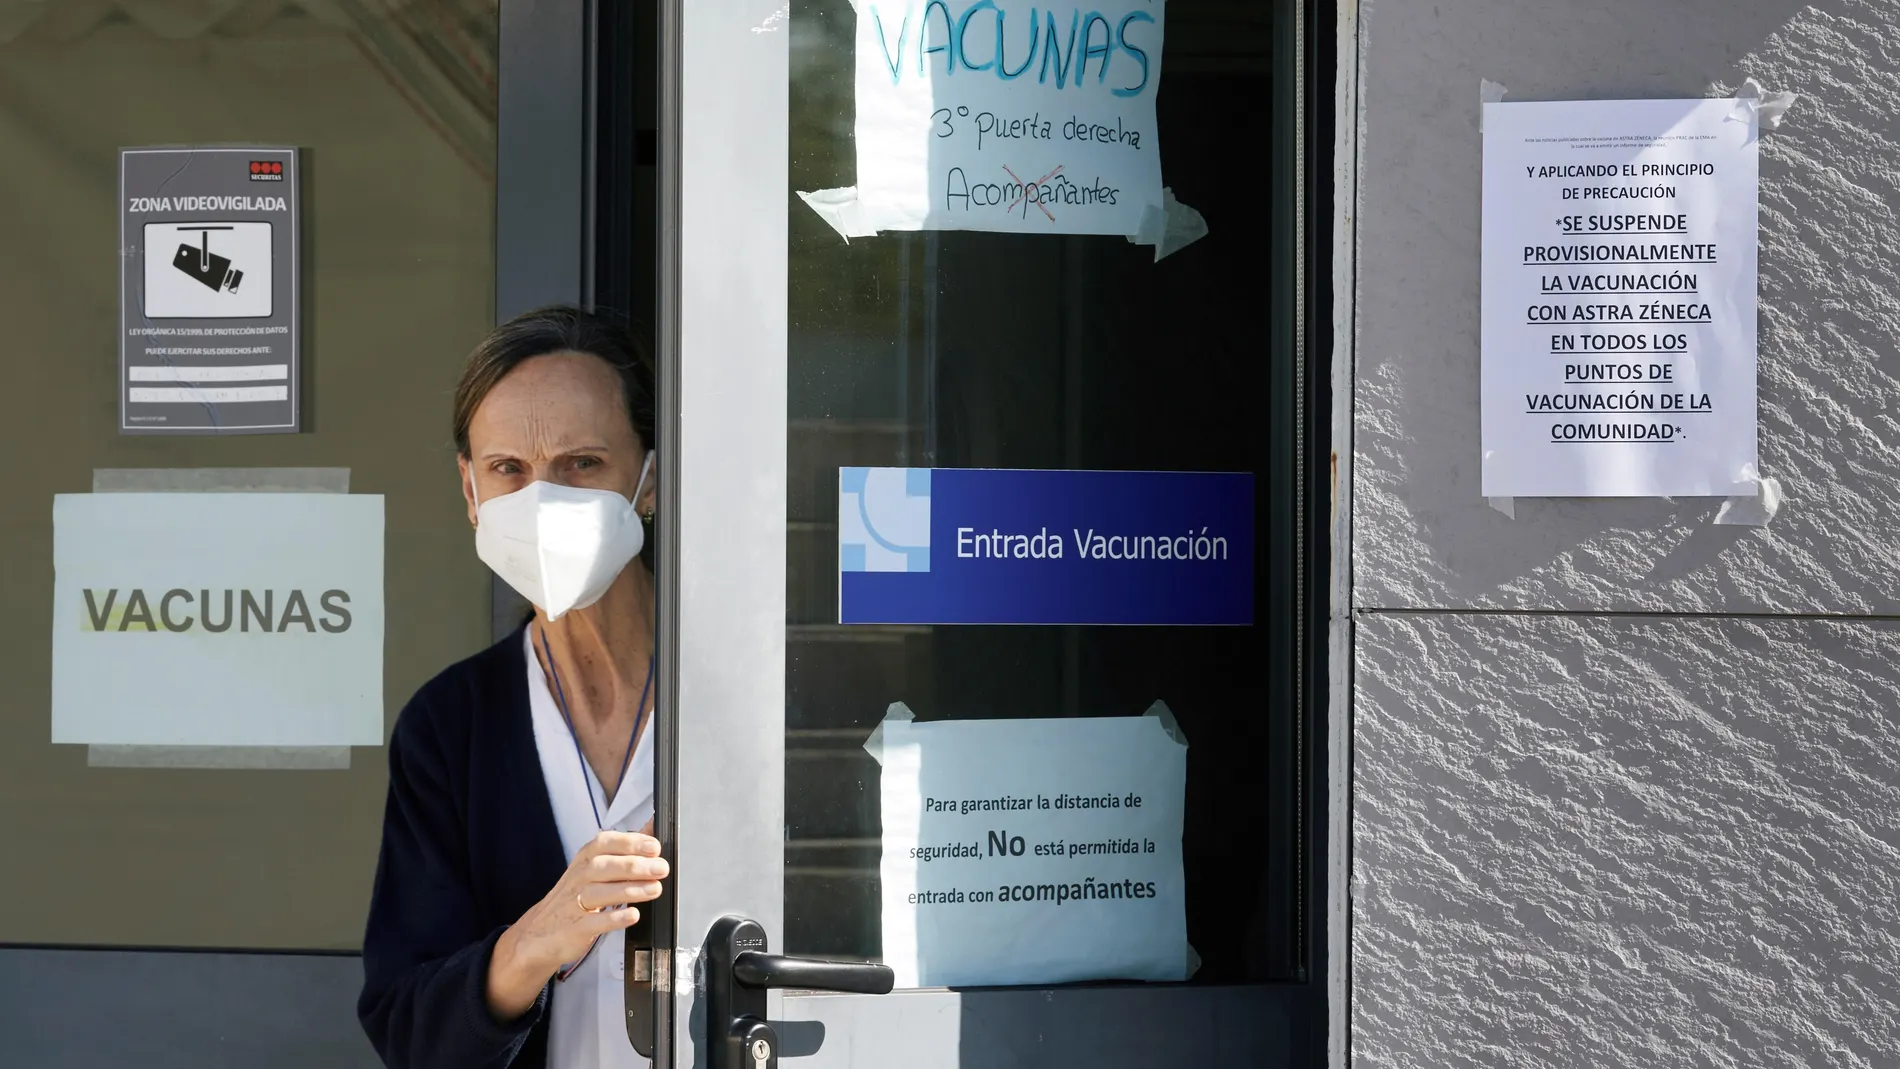 Una enfermera cierra la puerta de entrada a la zona de vacunación en el Hospital Provincial de Ávila después de la suspensión provisional de la vacunación frente a la COVID-19 con la vacuna de AstraZeneca en Castilla y León